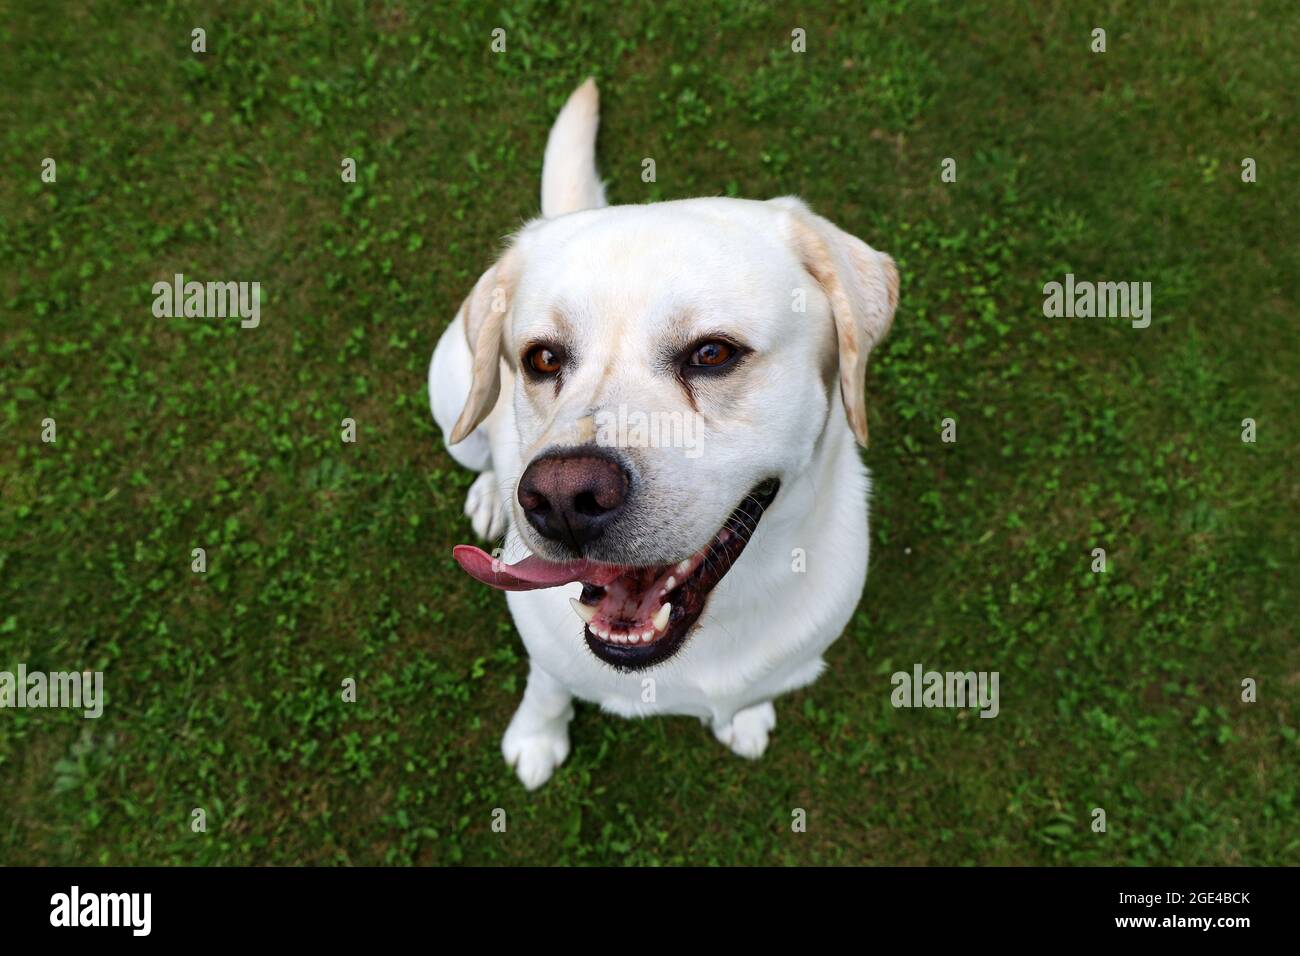 felice cane bianco sorridente, labrador ritriever su erba verde guardando in su nella macchina fotografica Foto Stock